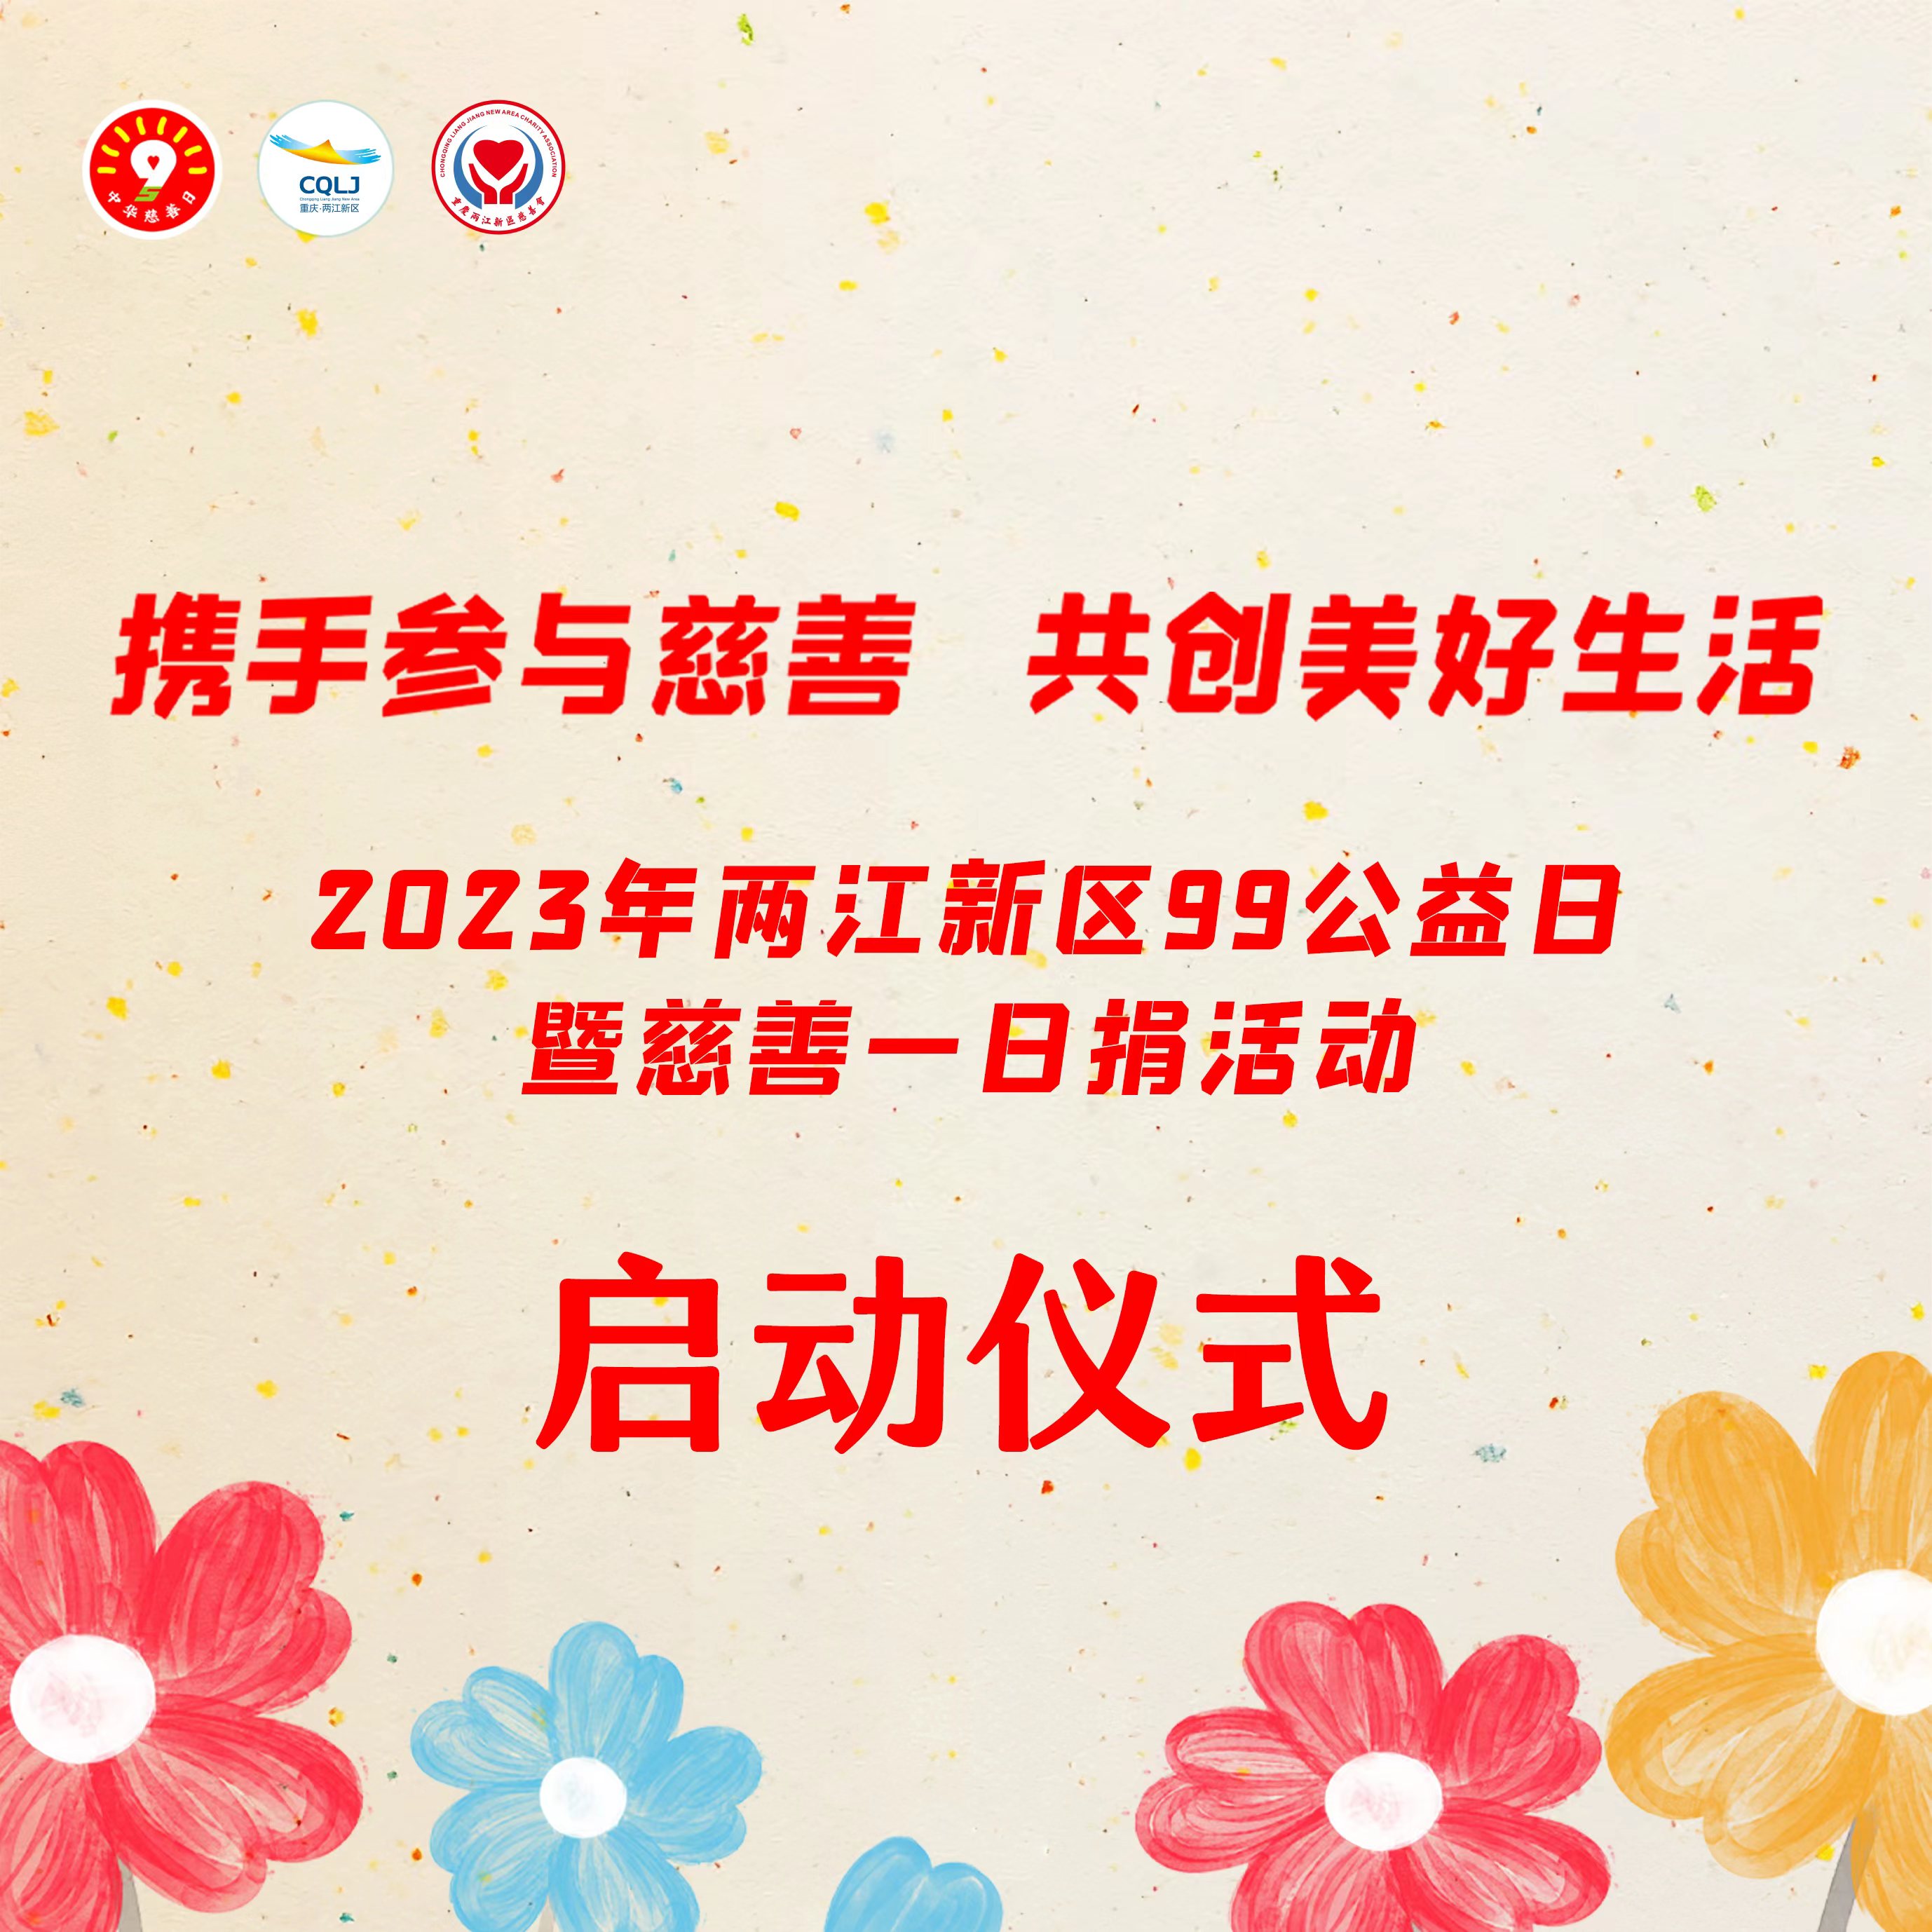 两江新区2023年“99公益日”暨“慈善一日捐”活动倡议书